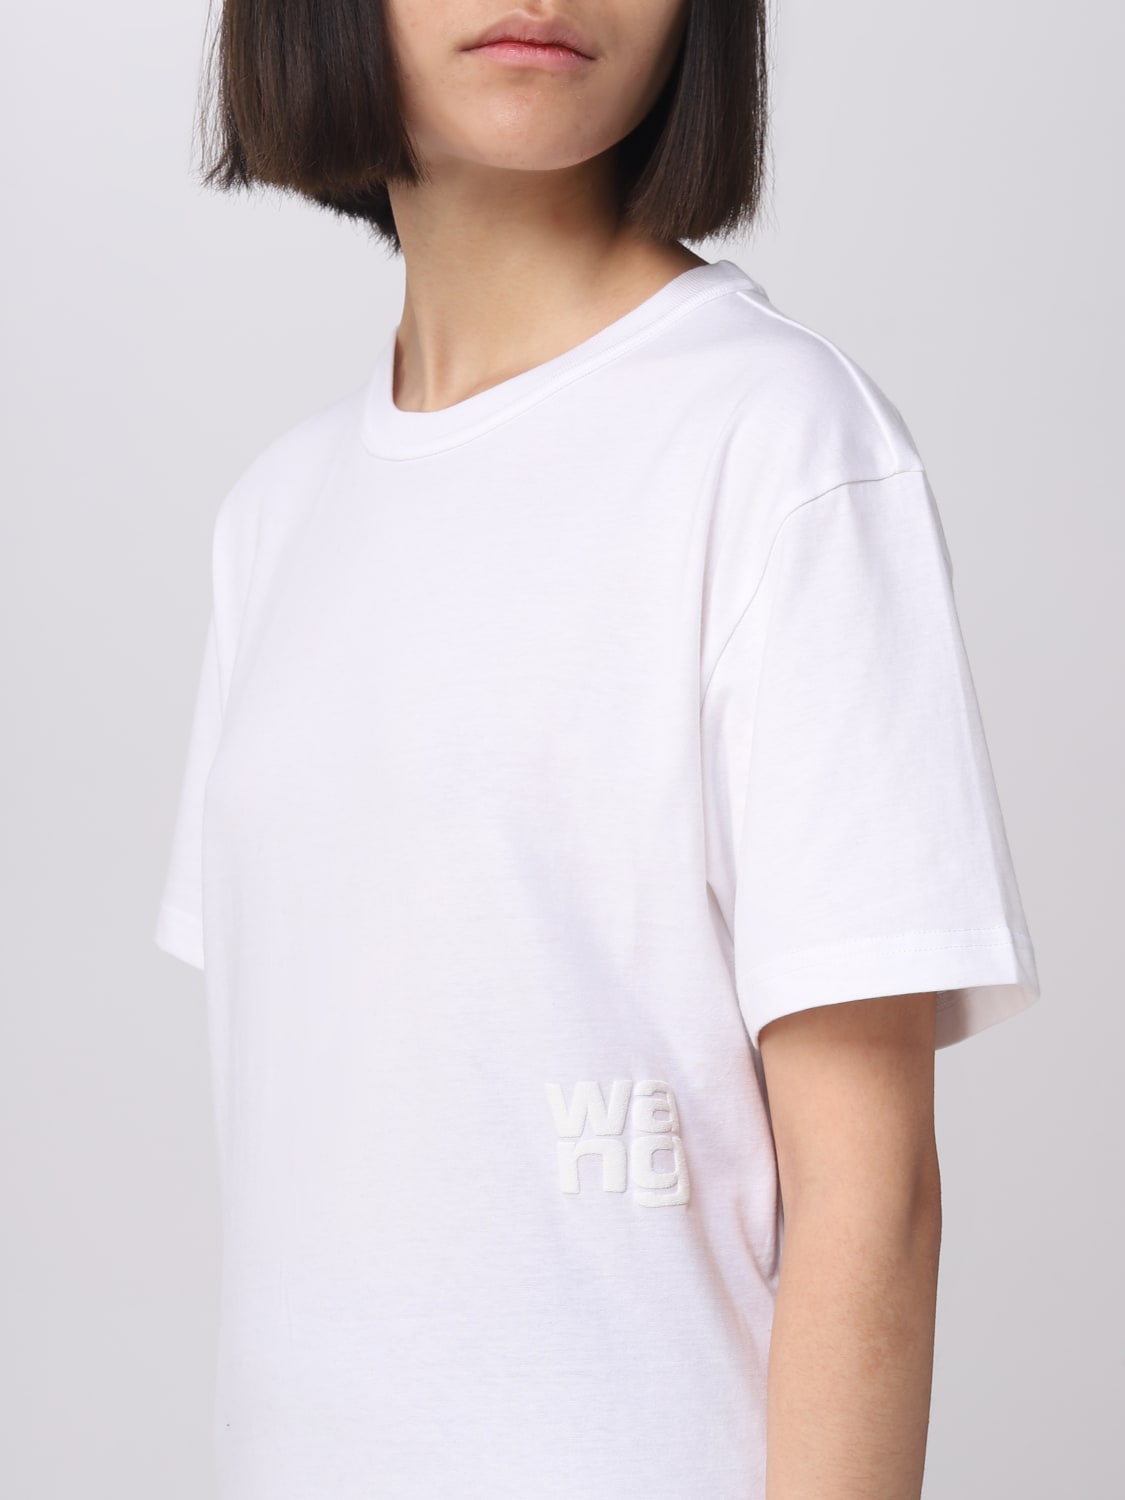 Alexander Wang Outlet: T-shirt woman - White | Alexander Wang t-shirt  4CC3221357 online at